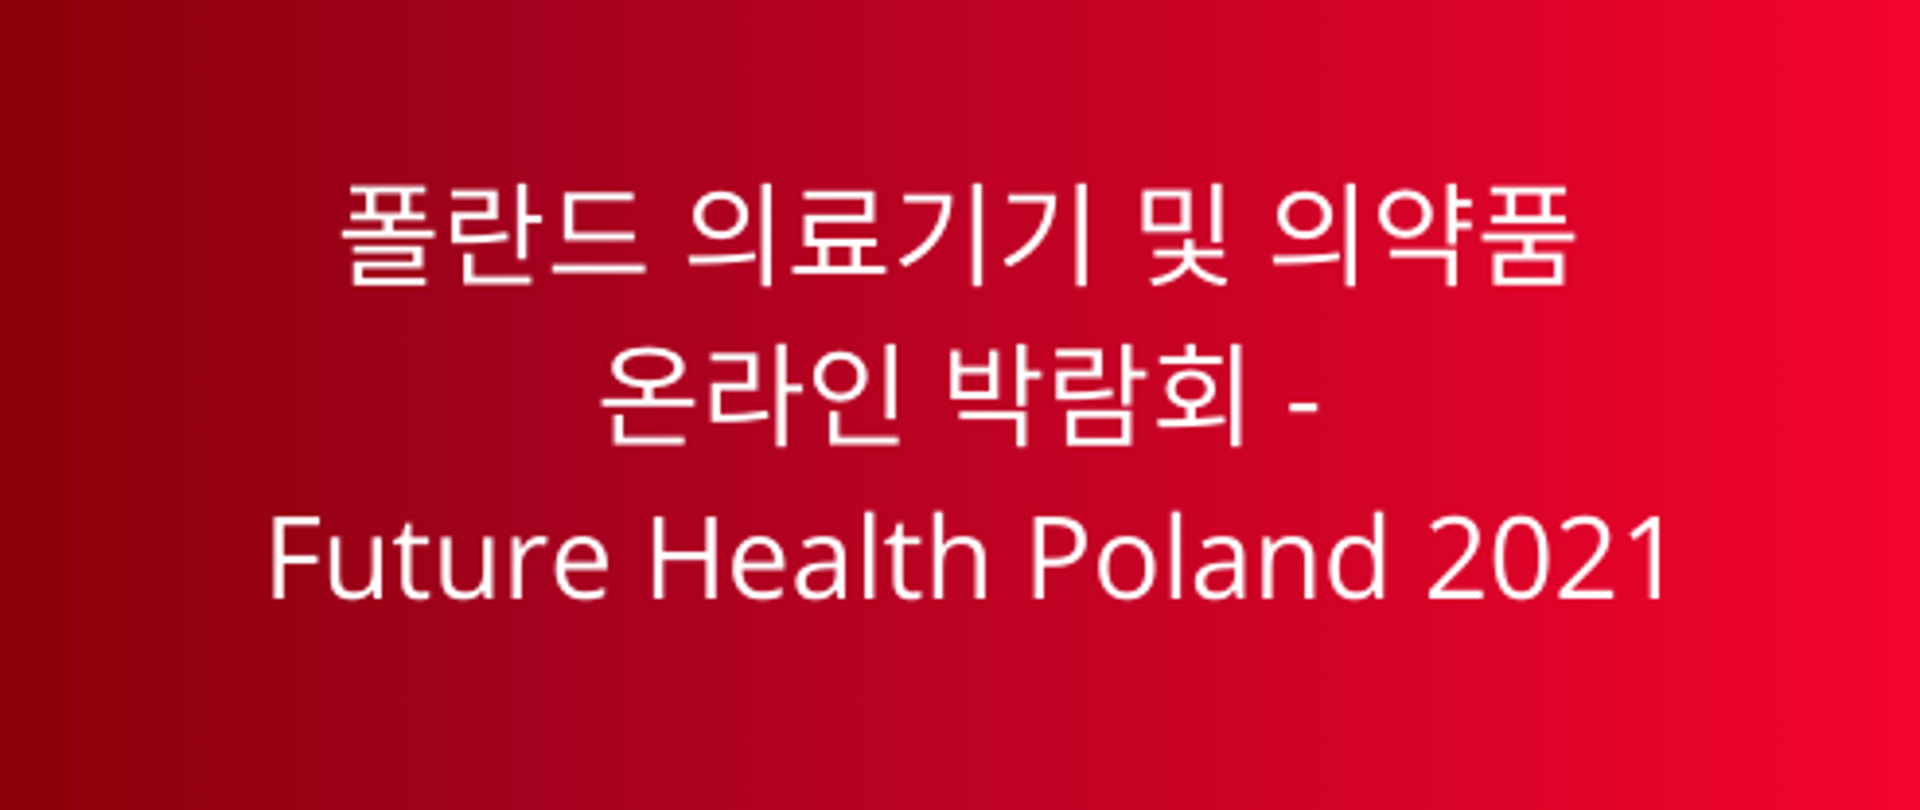 Future Health Poland 2021